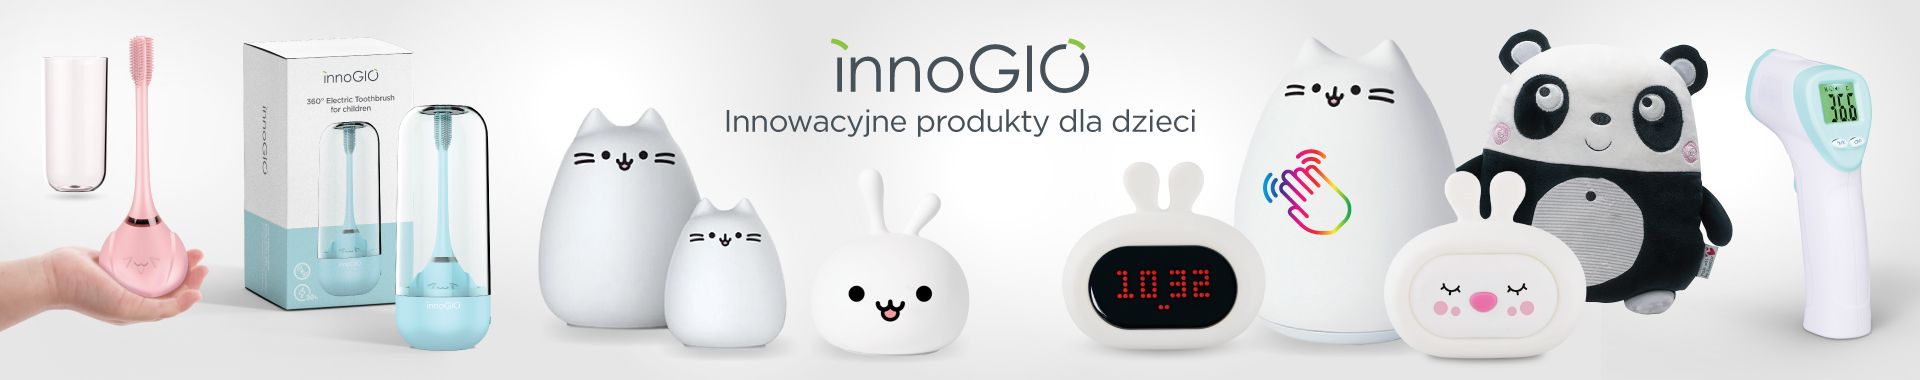 InnoGIO - innowacyjne produkty dla dzieci